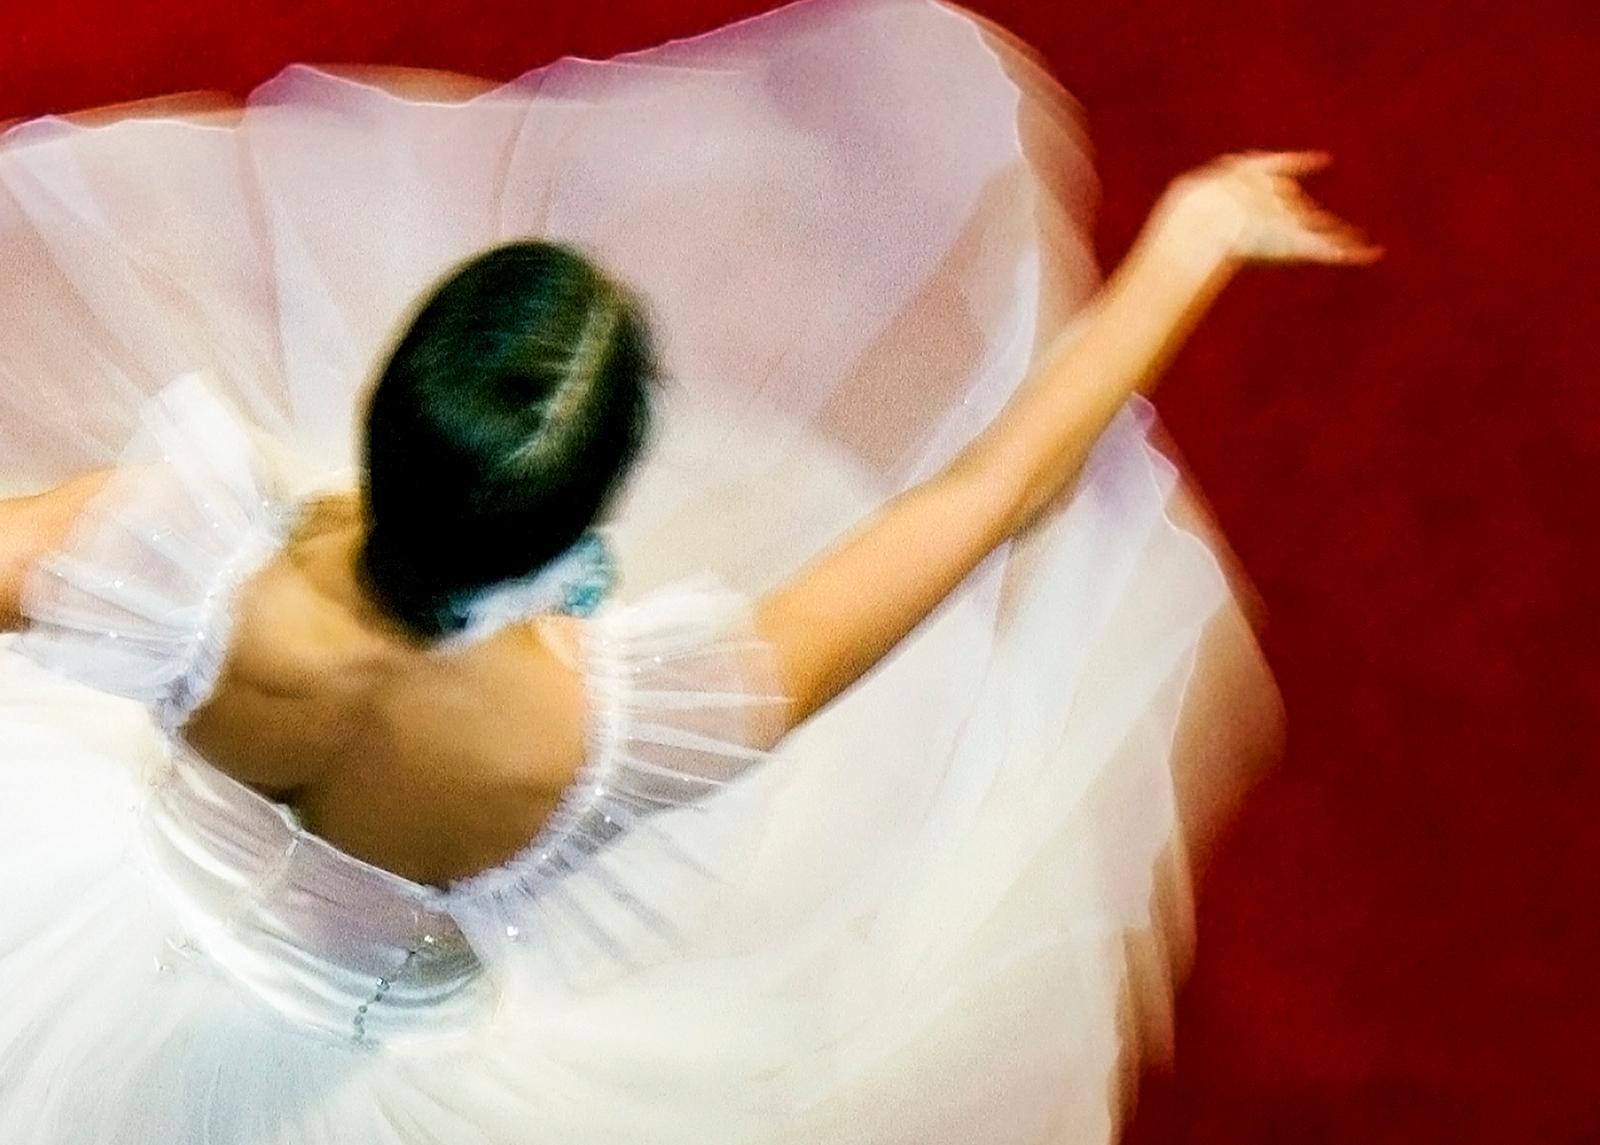 Danseuse - Livraison gratuite - Impression d'art limitée signée, contemporaine, danse, romaine - Photograph de Ian Sanderson